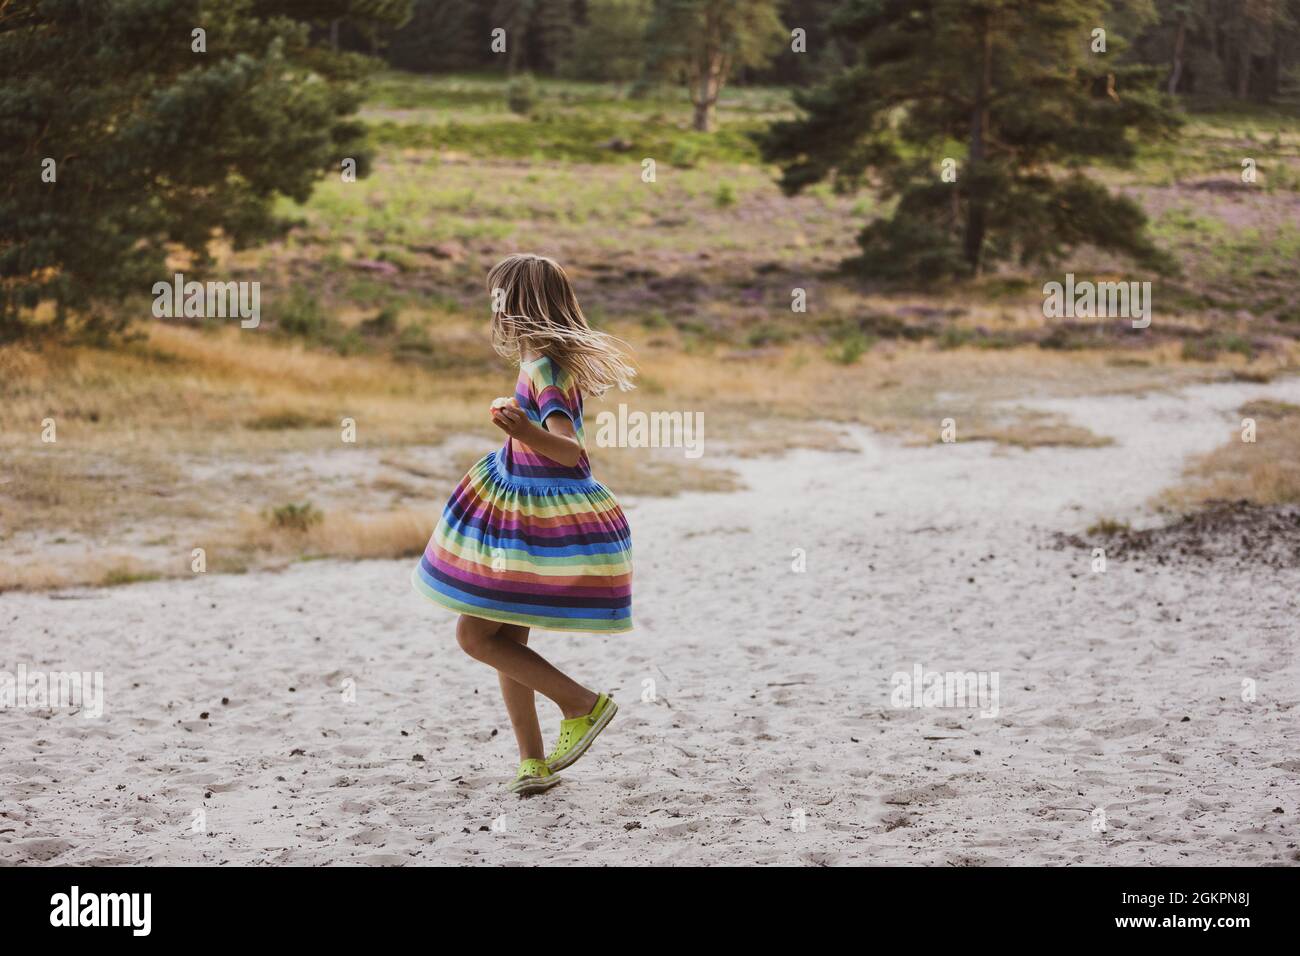 Petite fille dansant dans la nature, Drents-Friese Wold, pays-Bas Banque D'Images